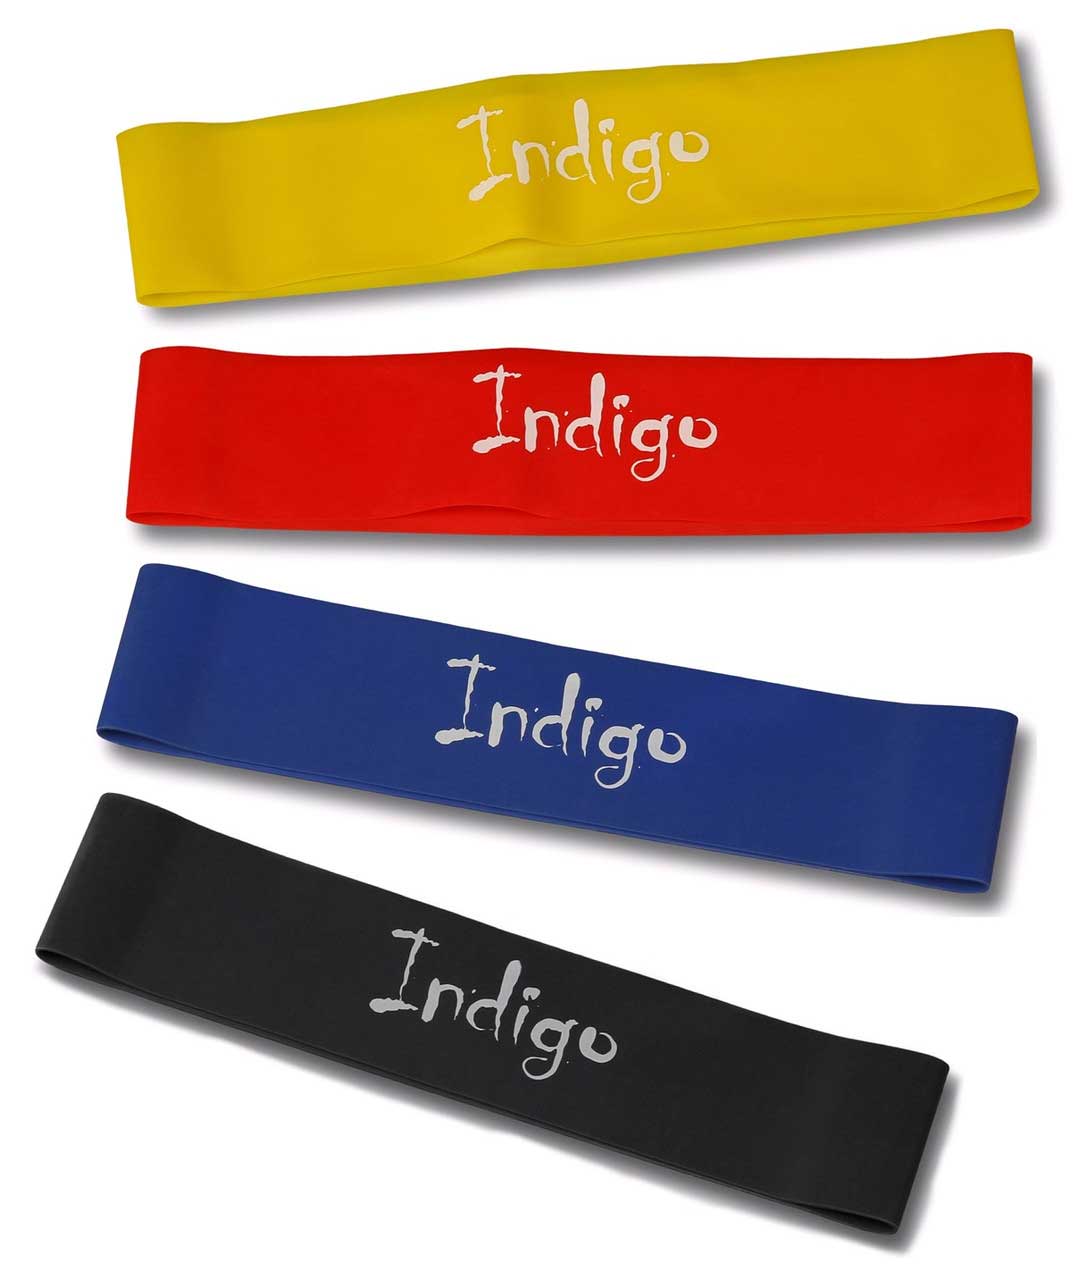 Эспандер в наборе 5 латексных лент разной нагрузки  INDIGO IN260 0,6*5 0.3,0.5,0.7,0.9,1,1 Черный, Красный, Желтый, Синий, Салатовый